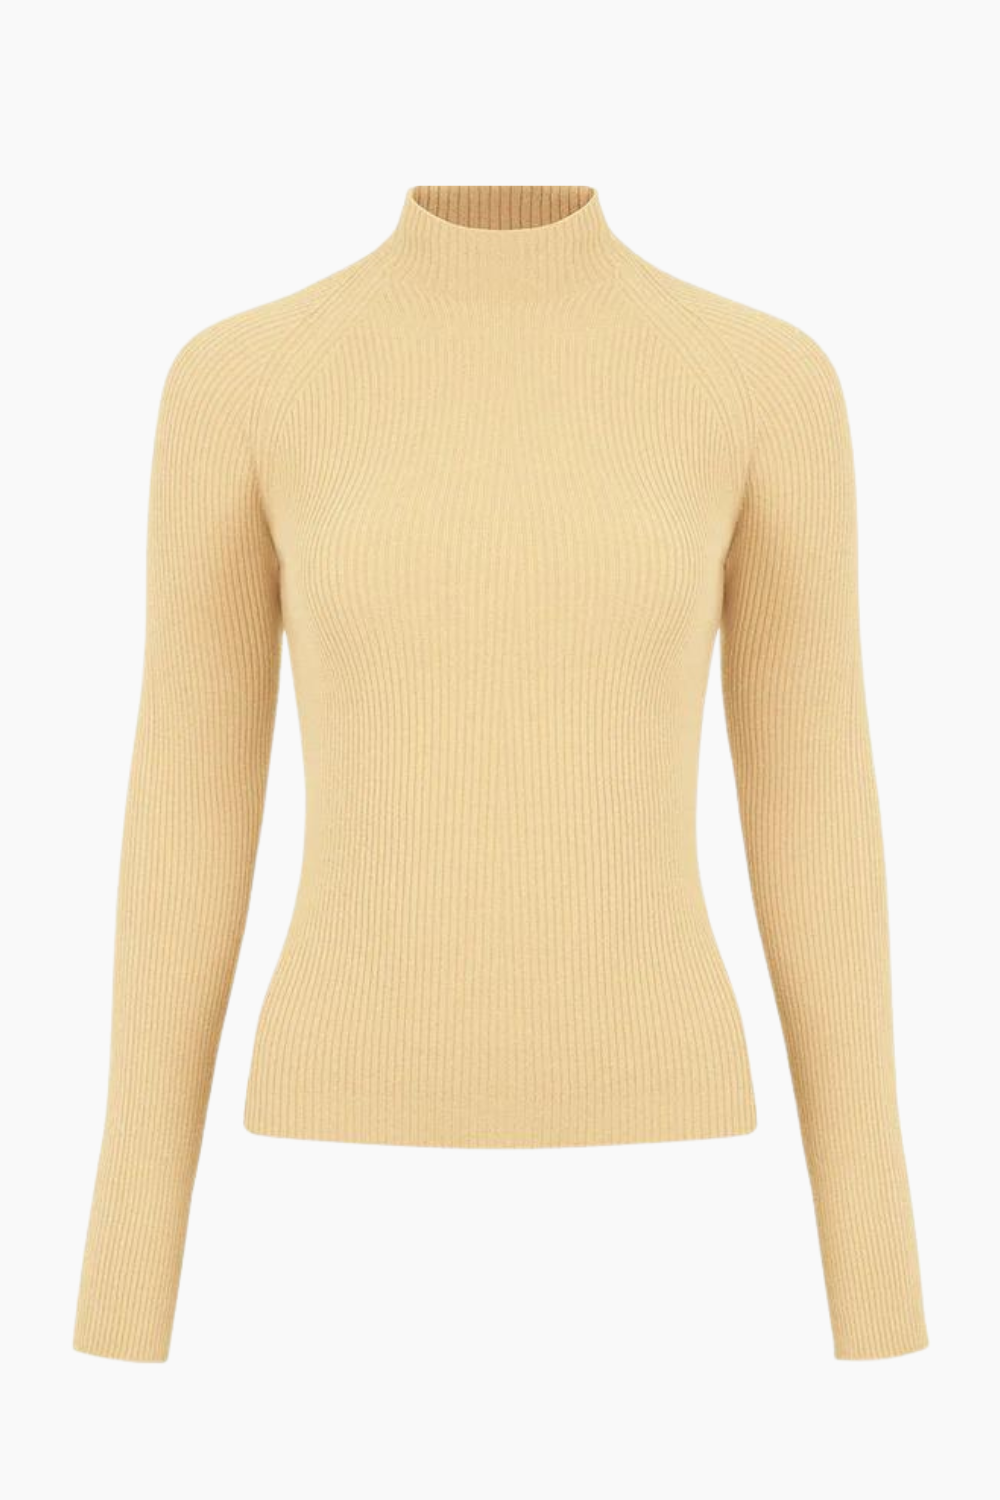 LuxeComfort Vanilla Turtleneck Sweater